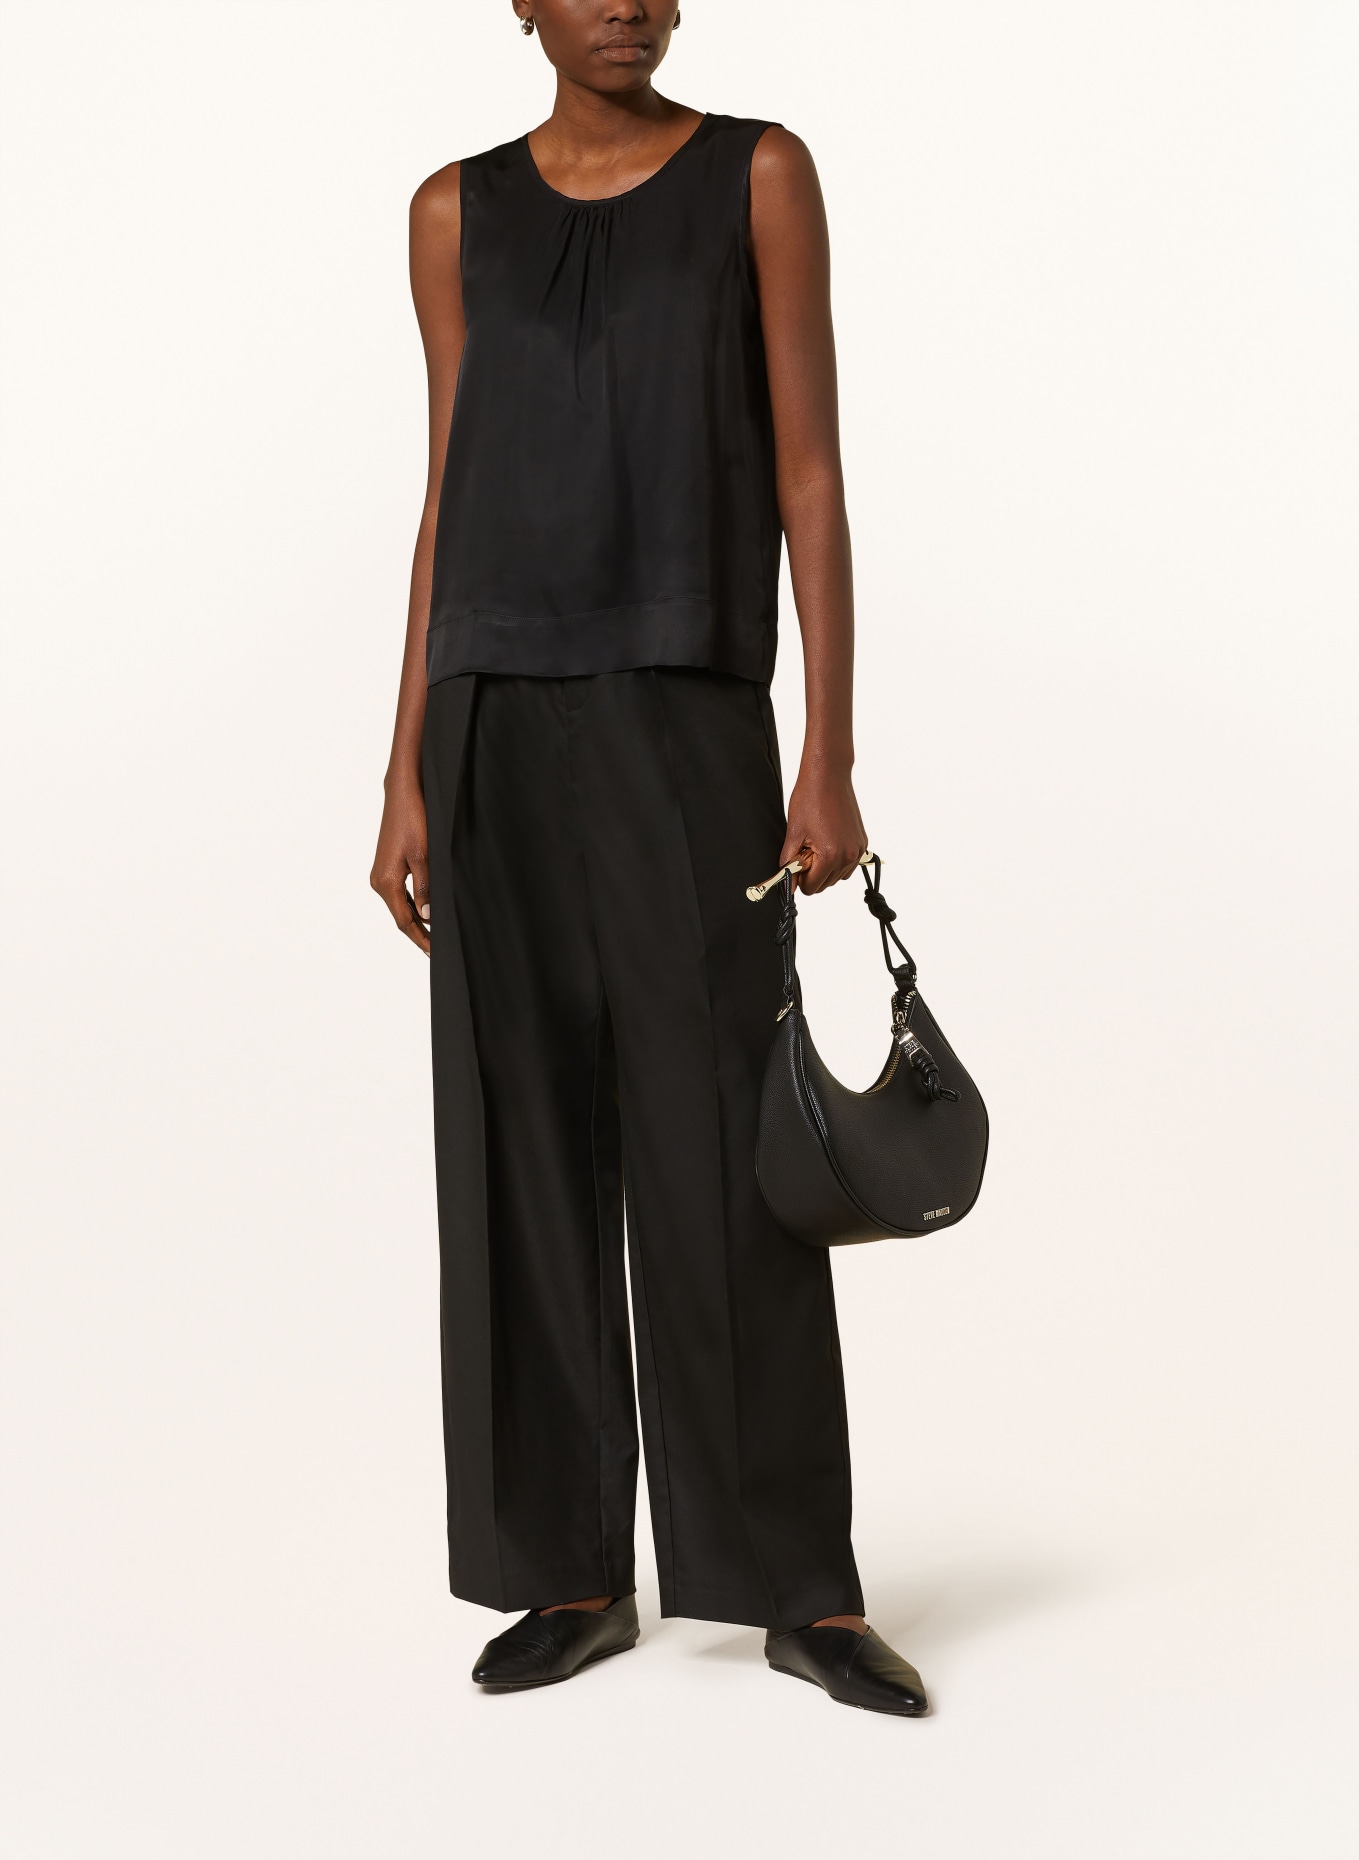 ETERNA Blouse top, Color: BLACK (Image 2)